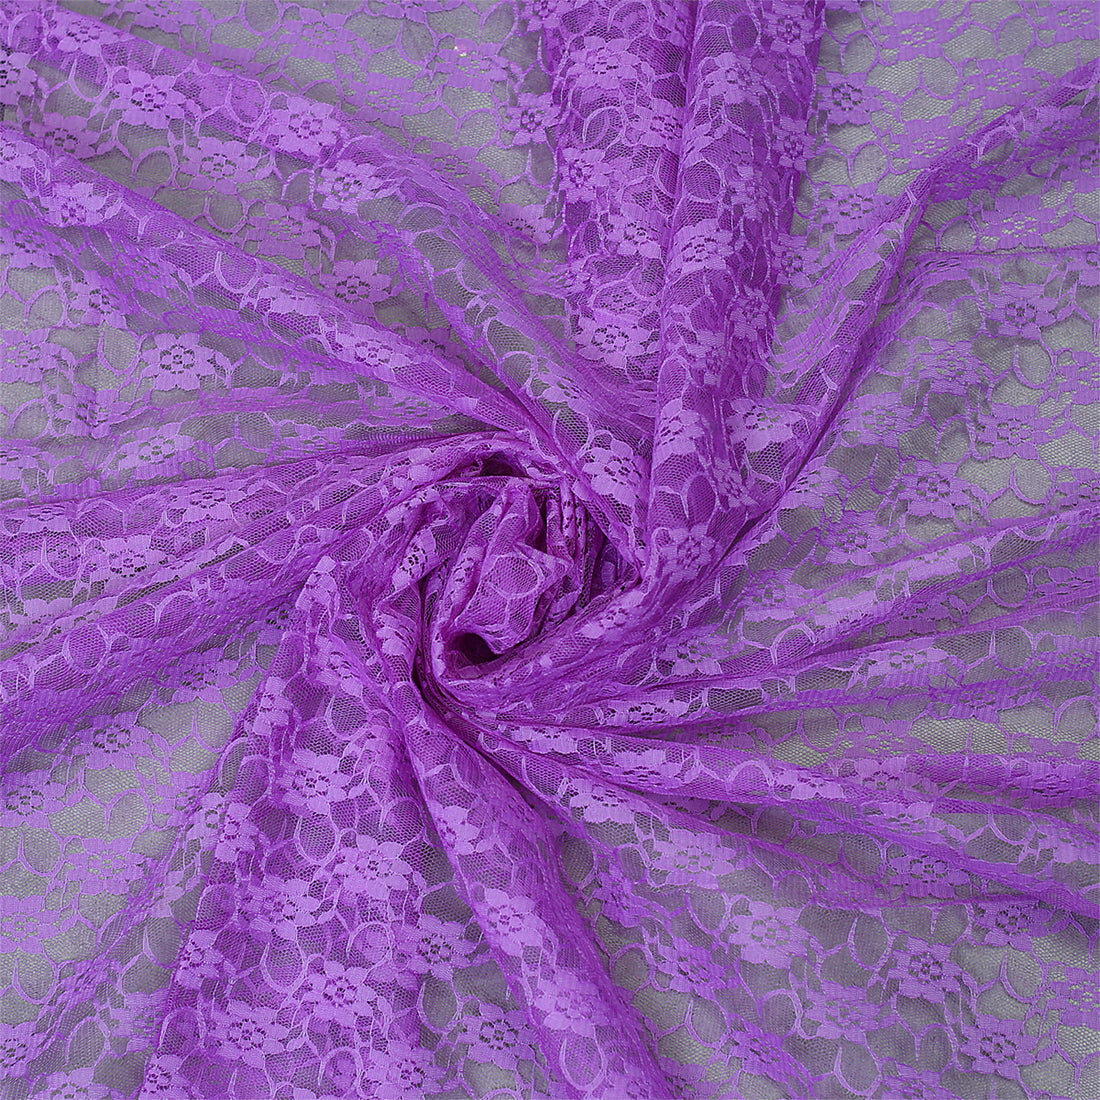 Lavender,70feb7e5-a212-42f7-b641-a3c328ecd083